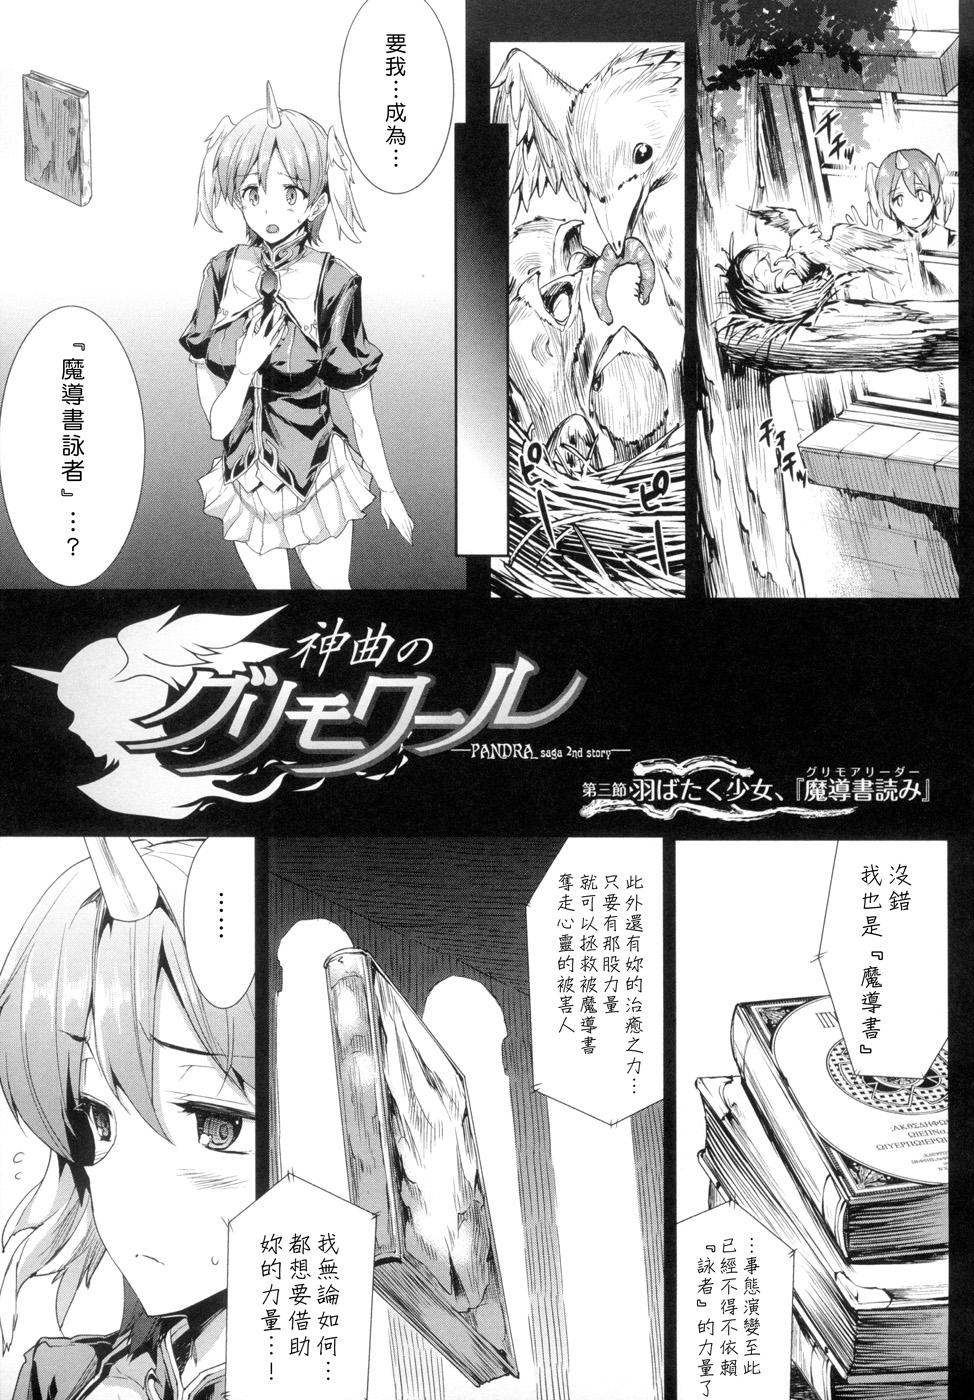 [Erect Sawaru] Shinkyoku no Grimoire -PANDRA saga 2nd story- Ch. 1-4 [Chinese] 49